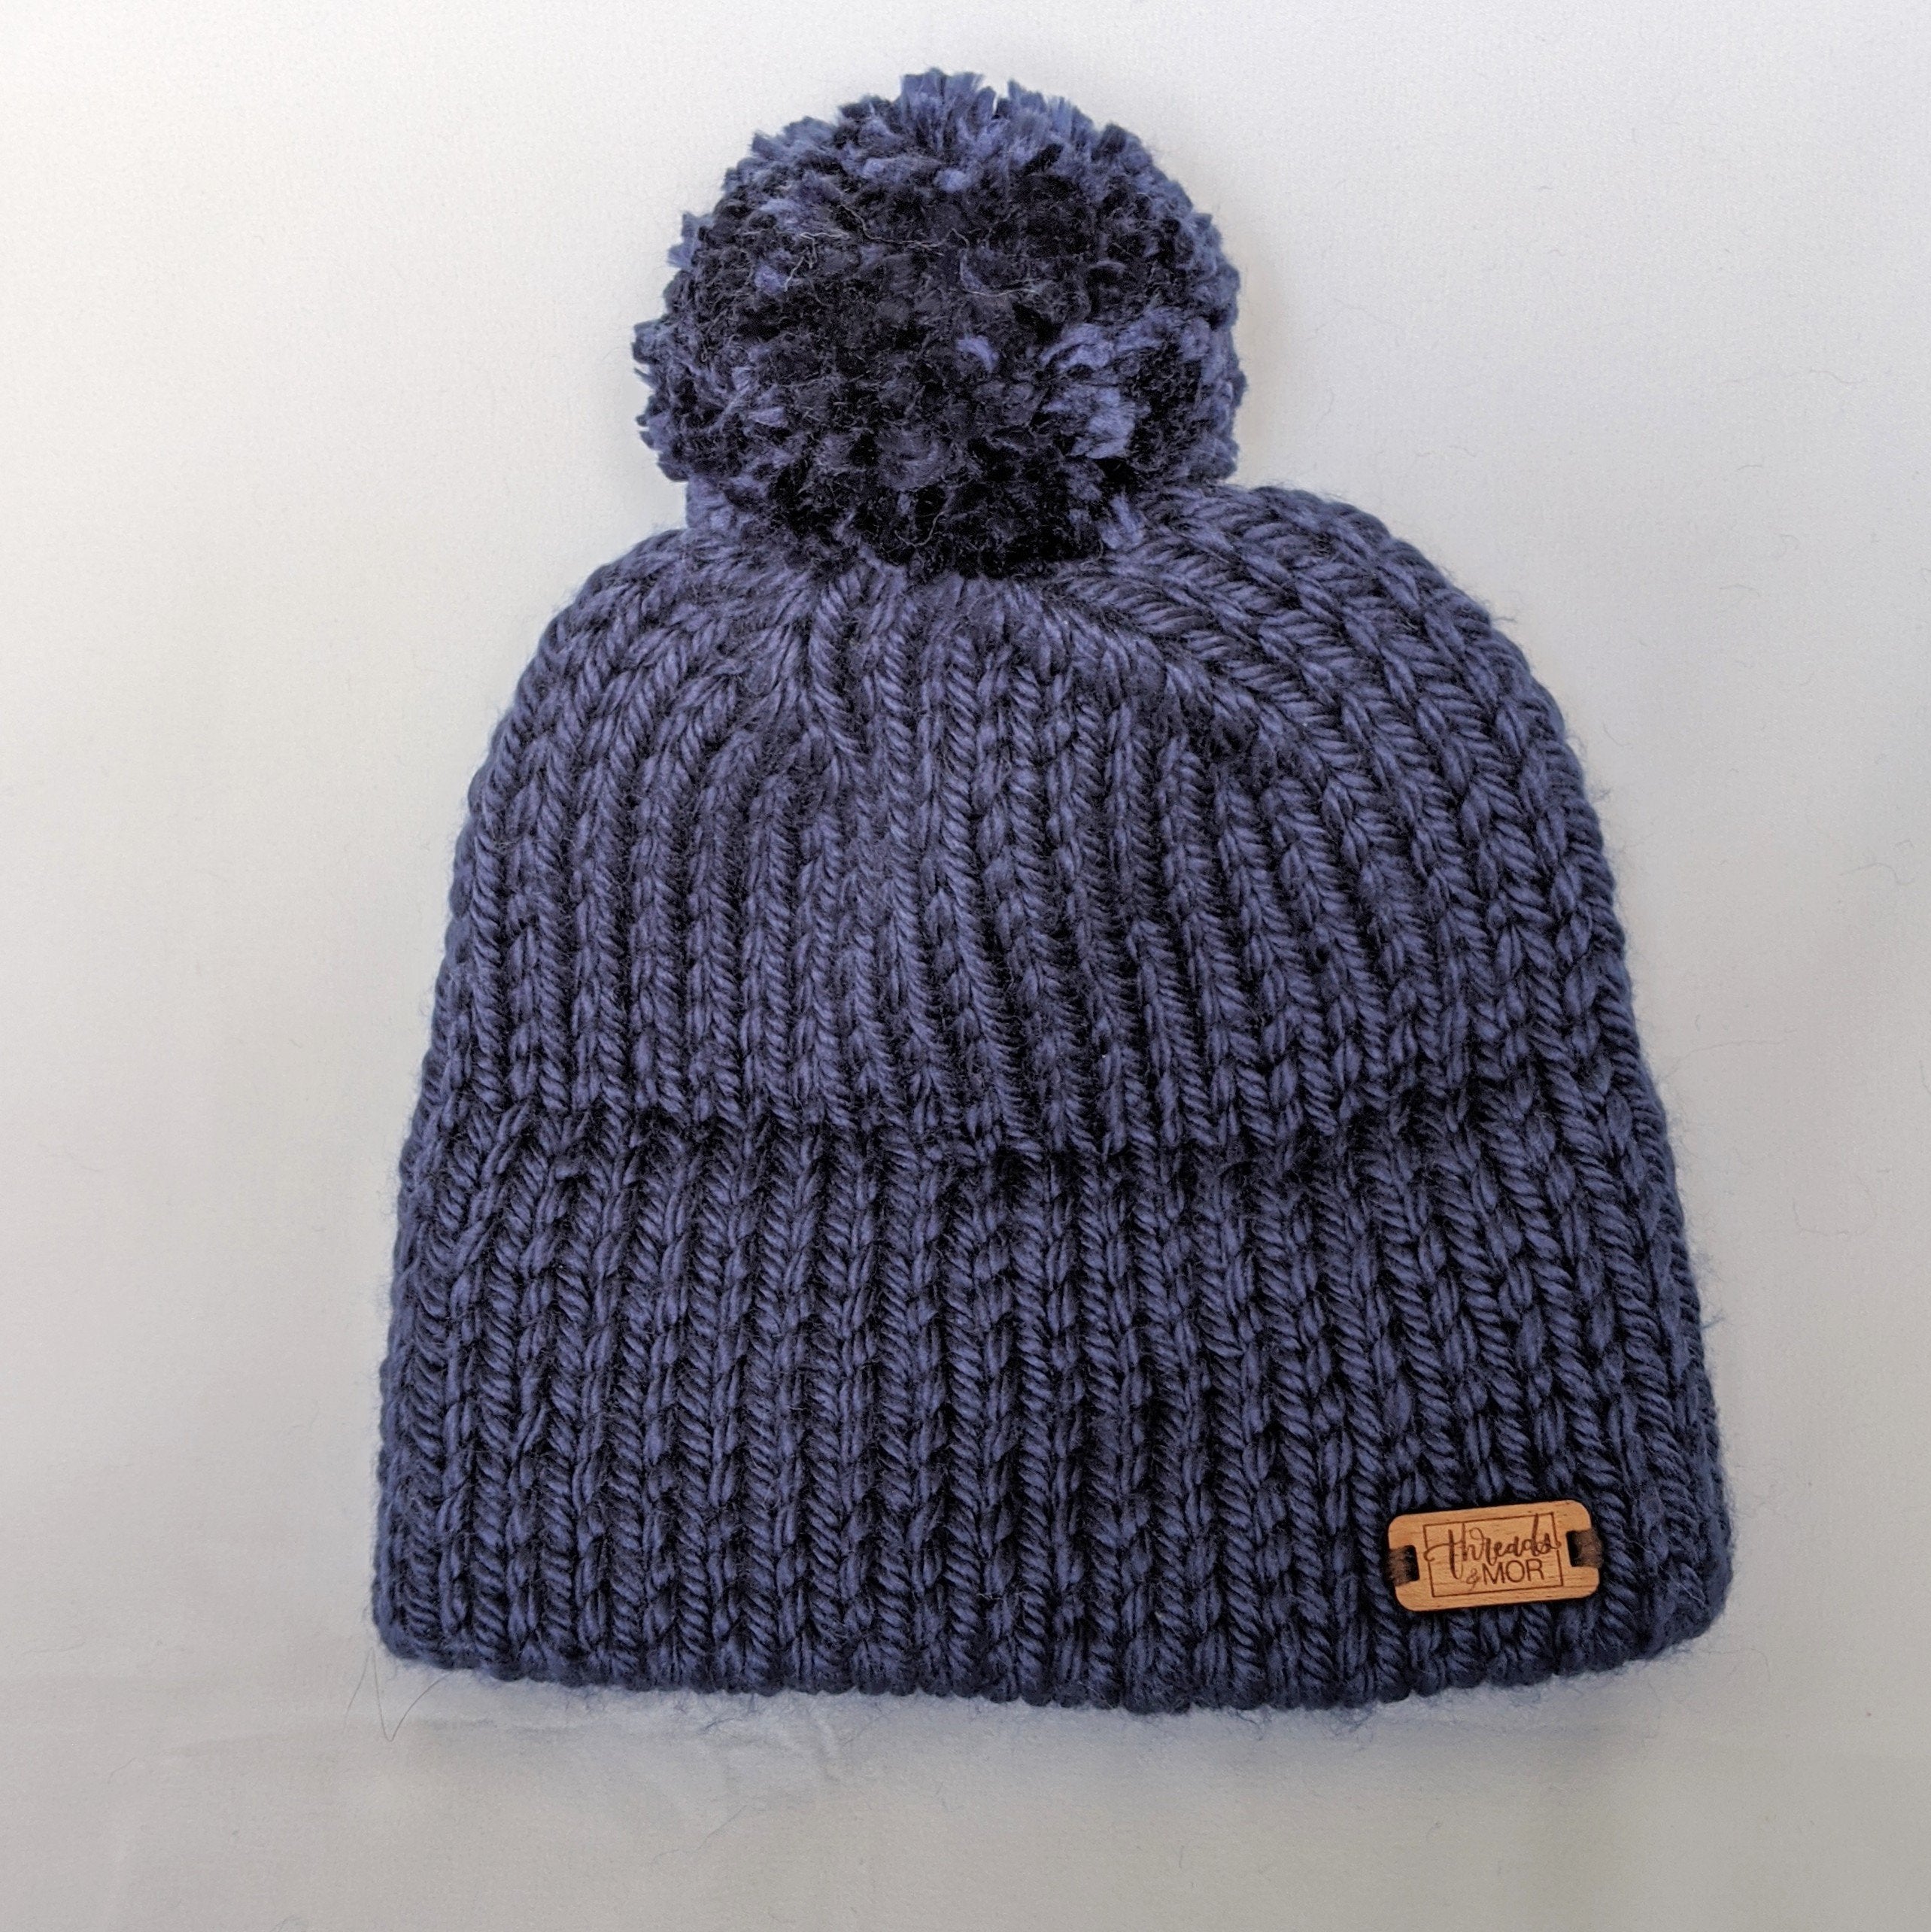 Navy double brim knit hat with yarn pompom